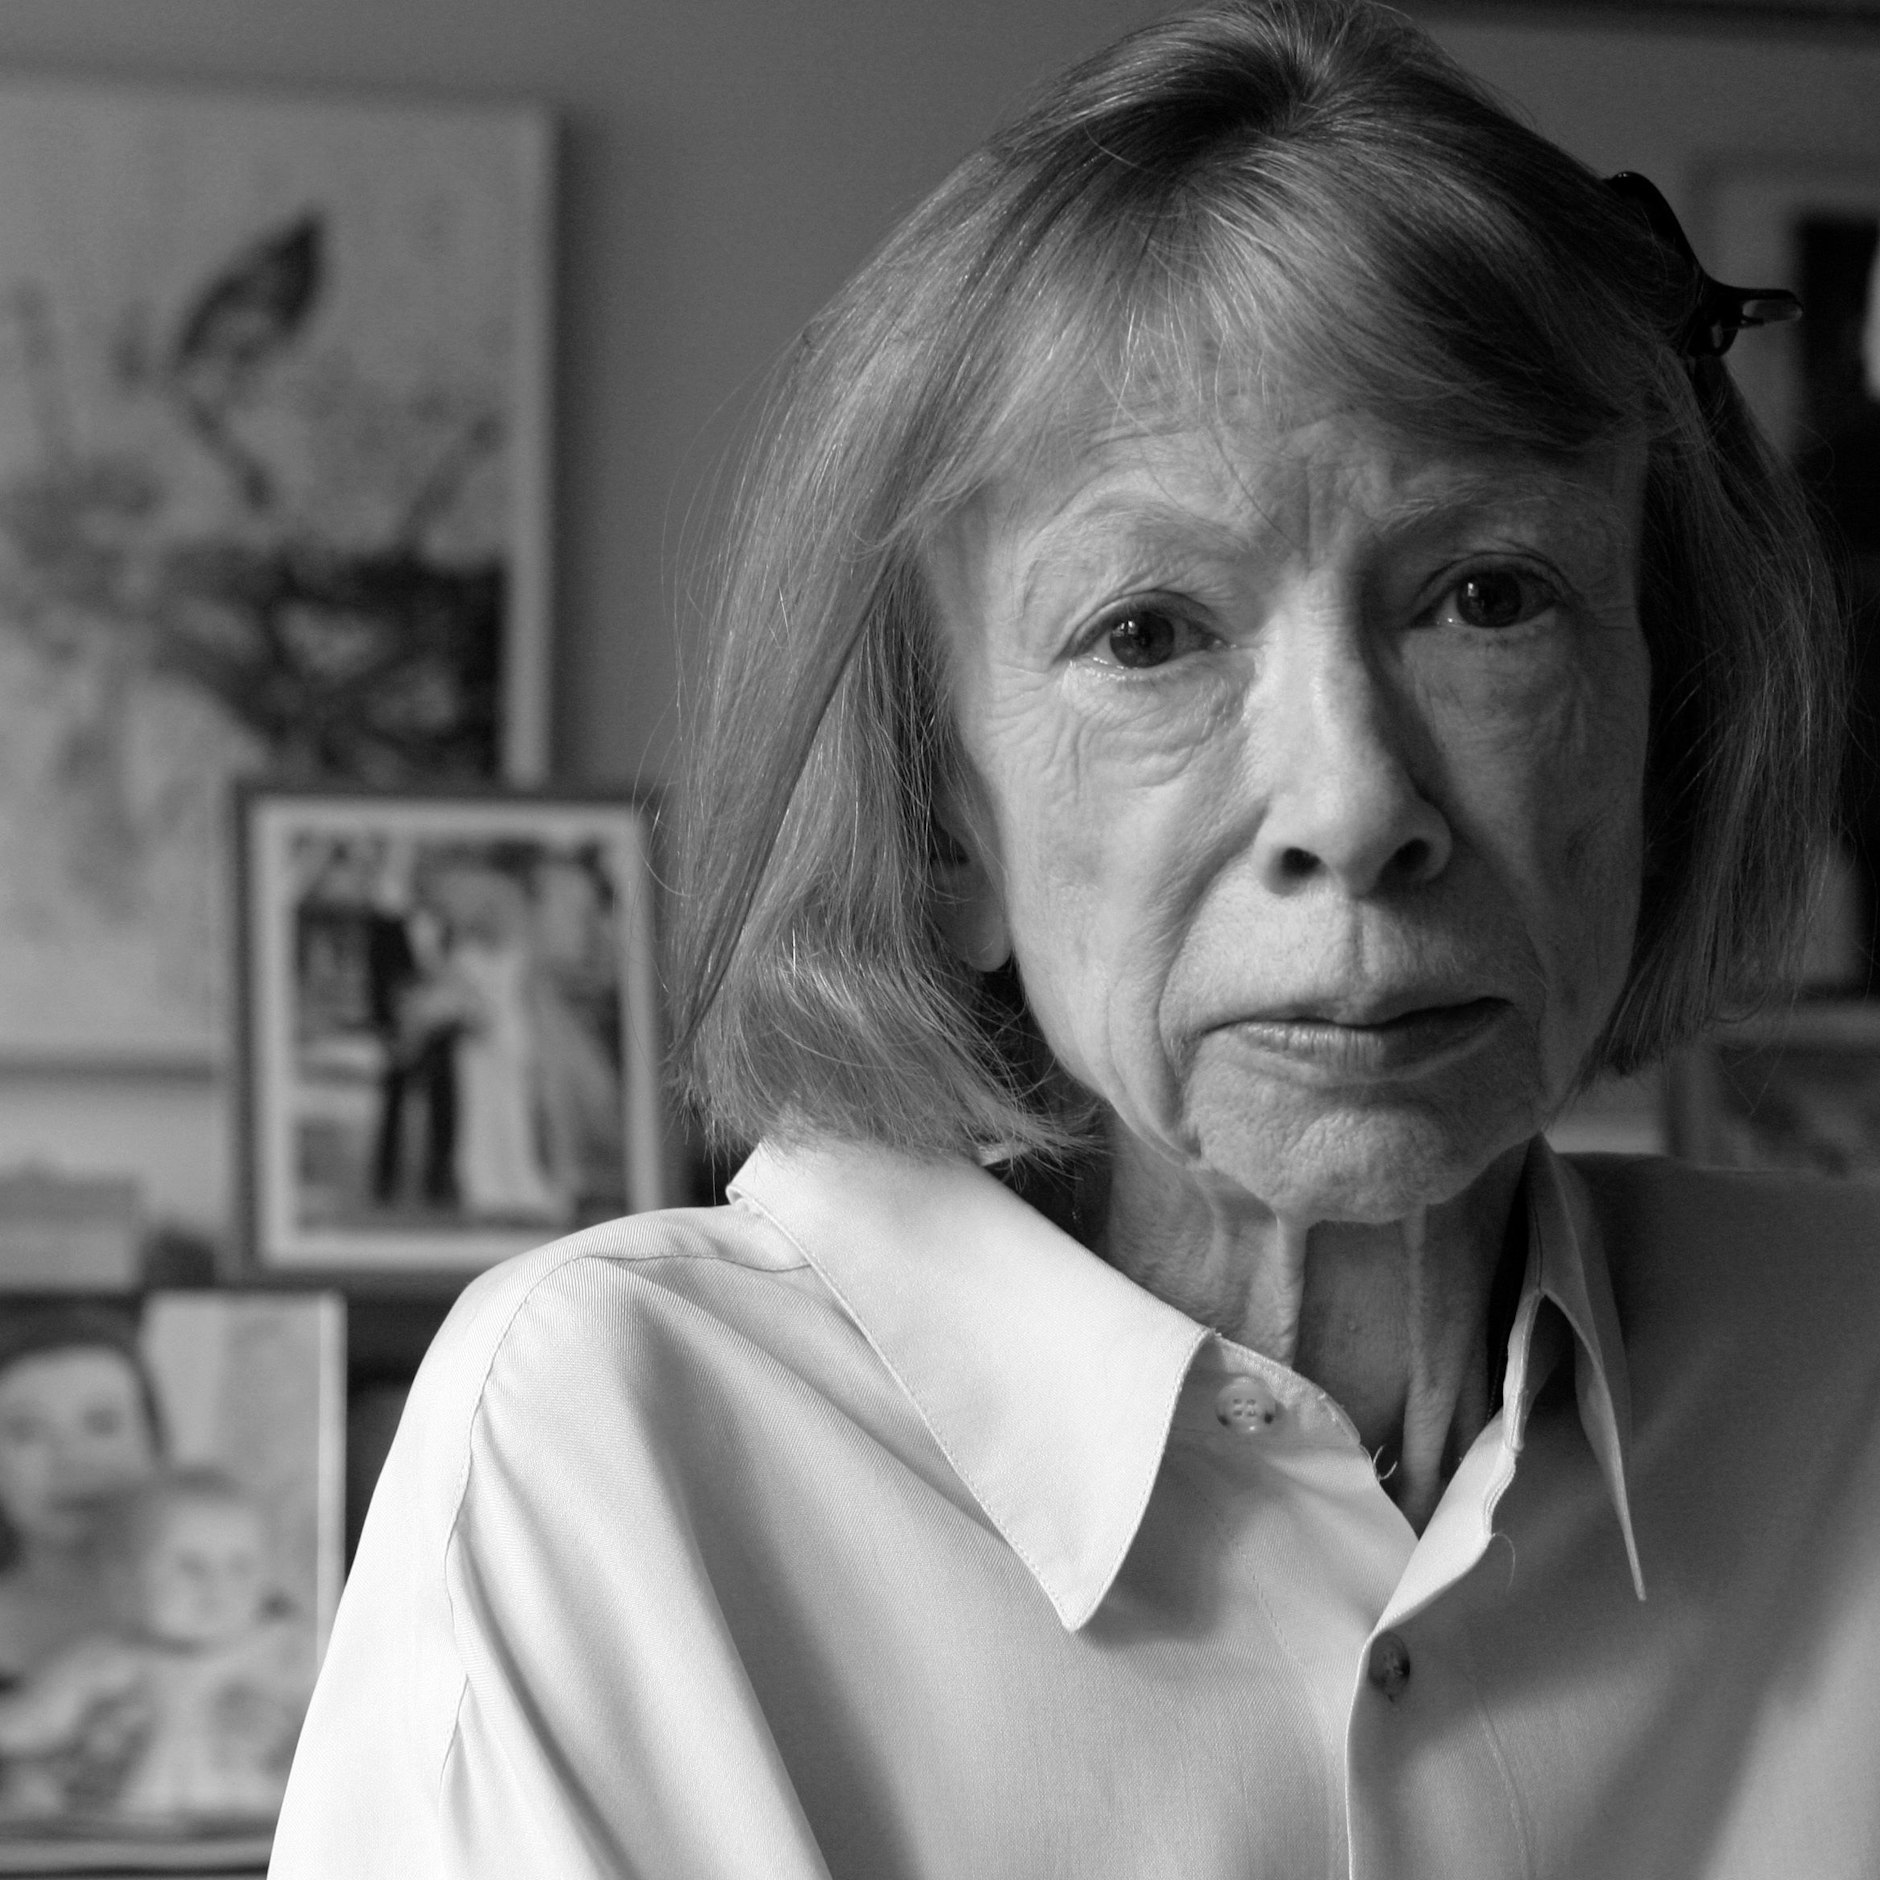 Image - Kult-Autorin Joan Didion ist tot